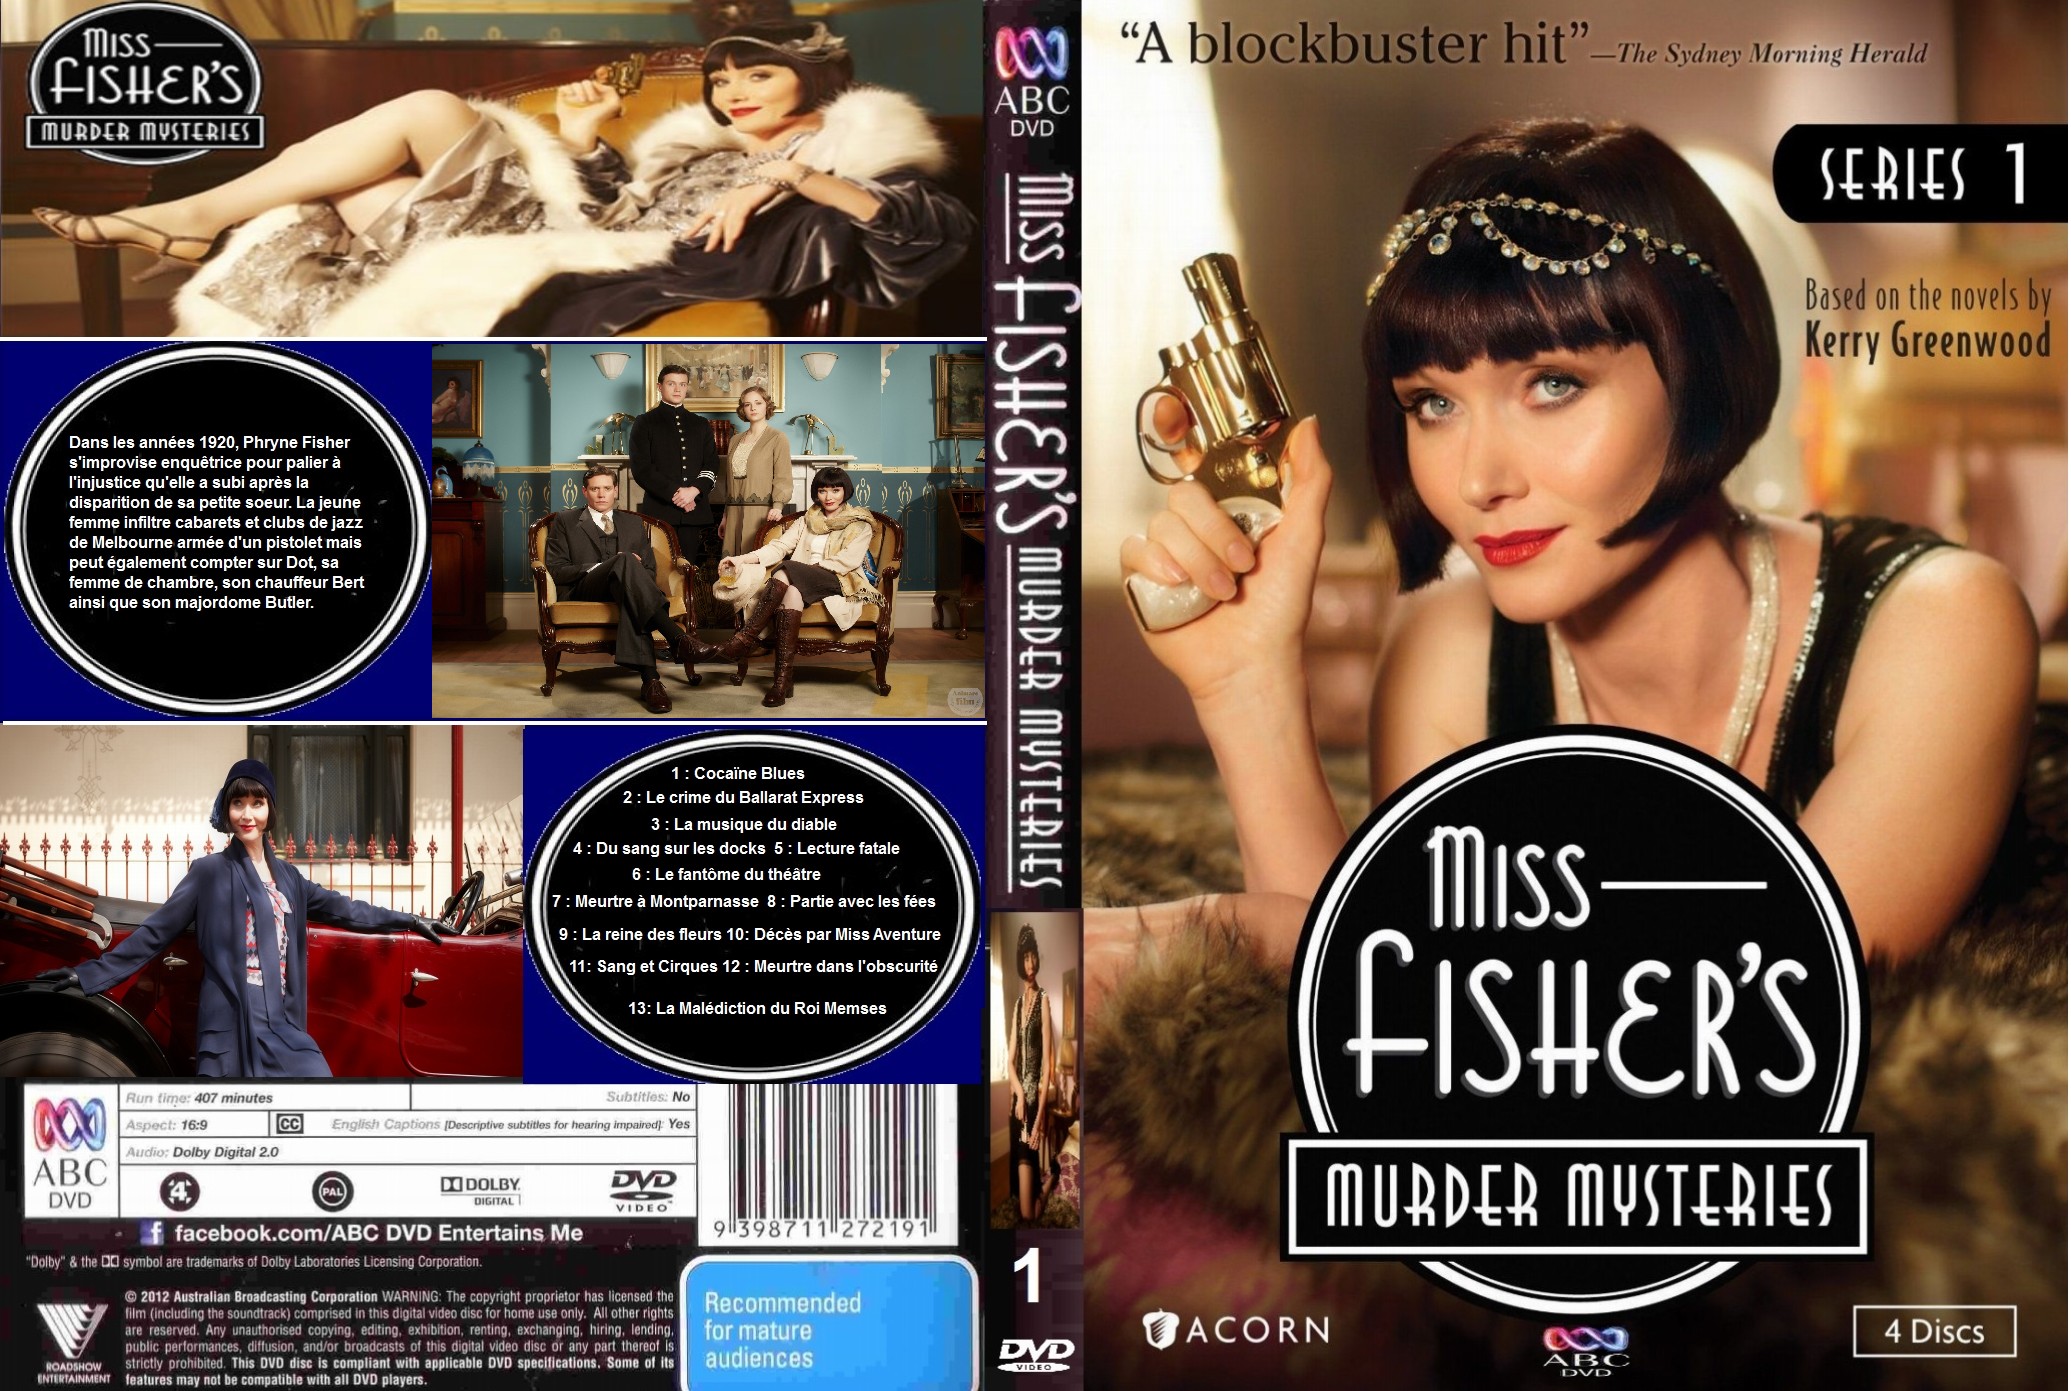 Jaquette DVD Miss Fisher enquete saison 1